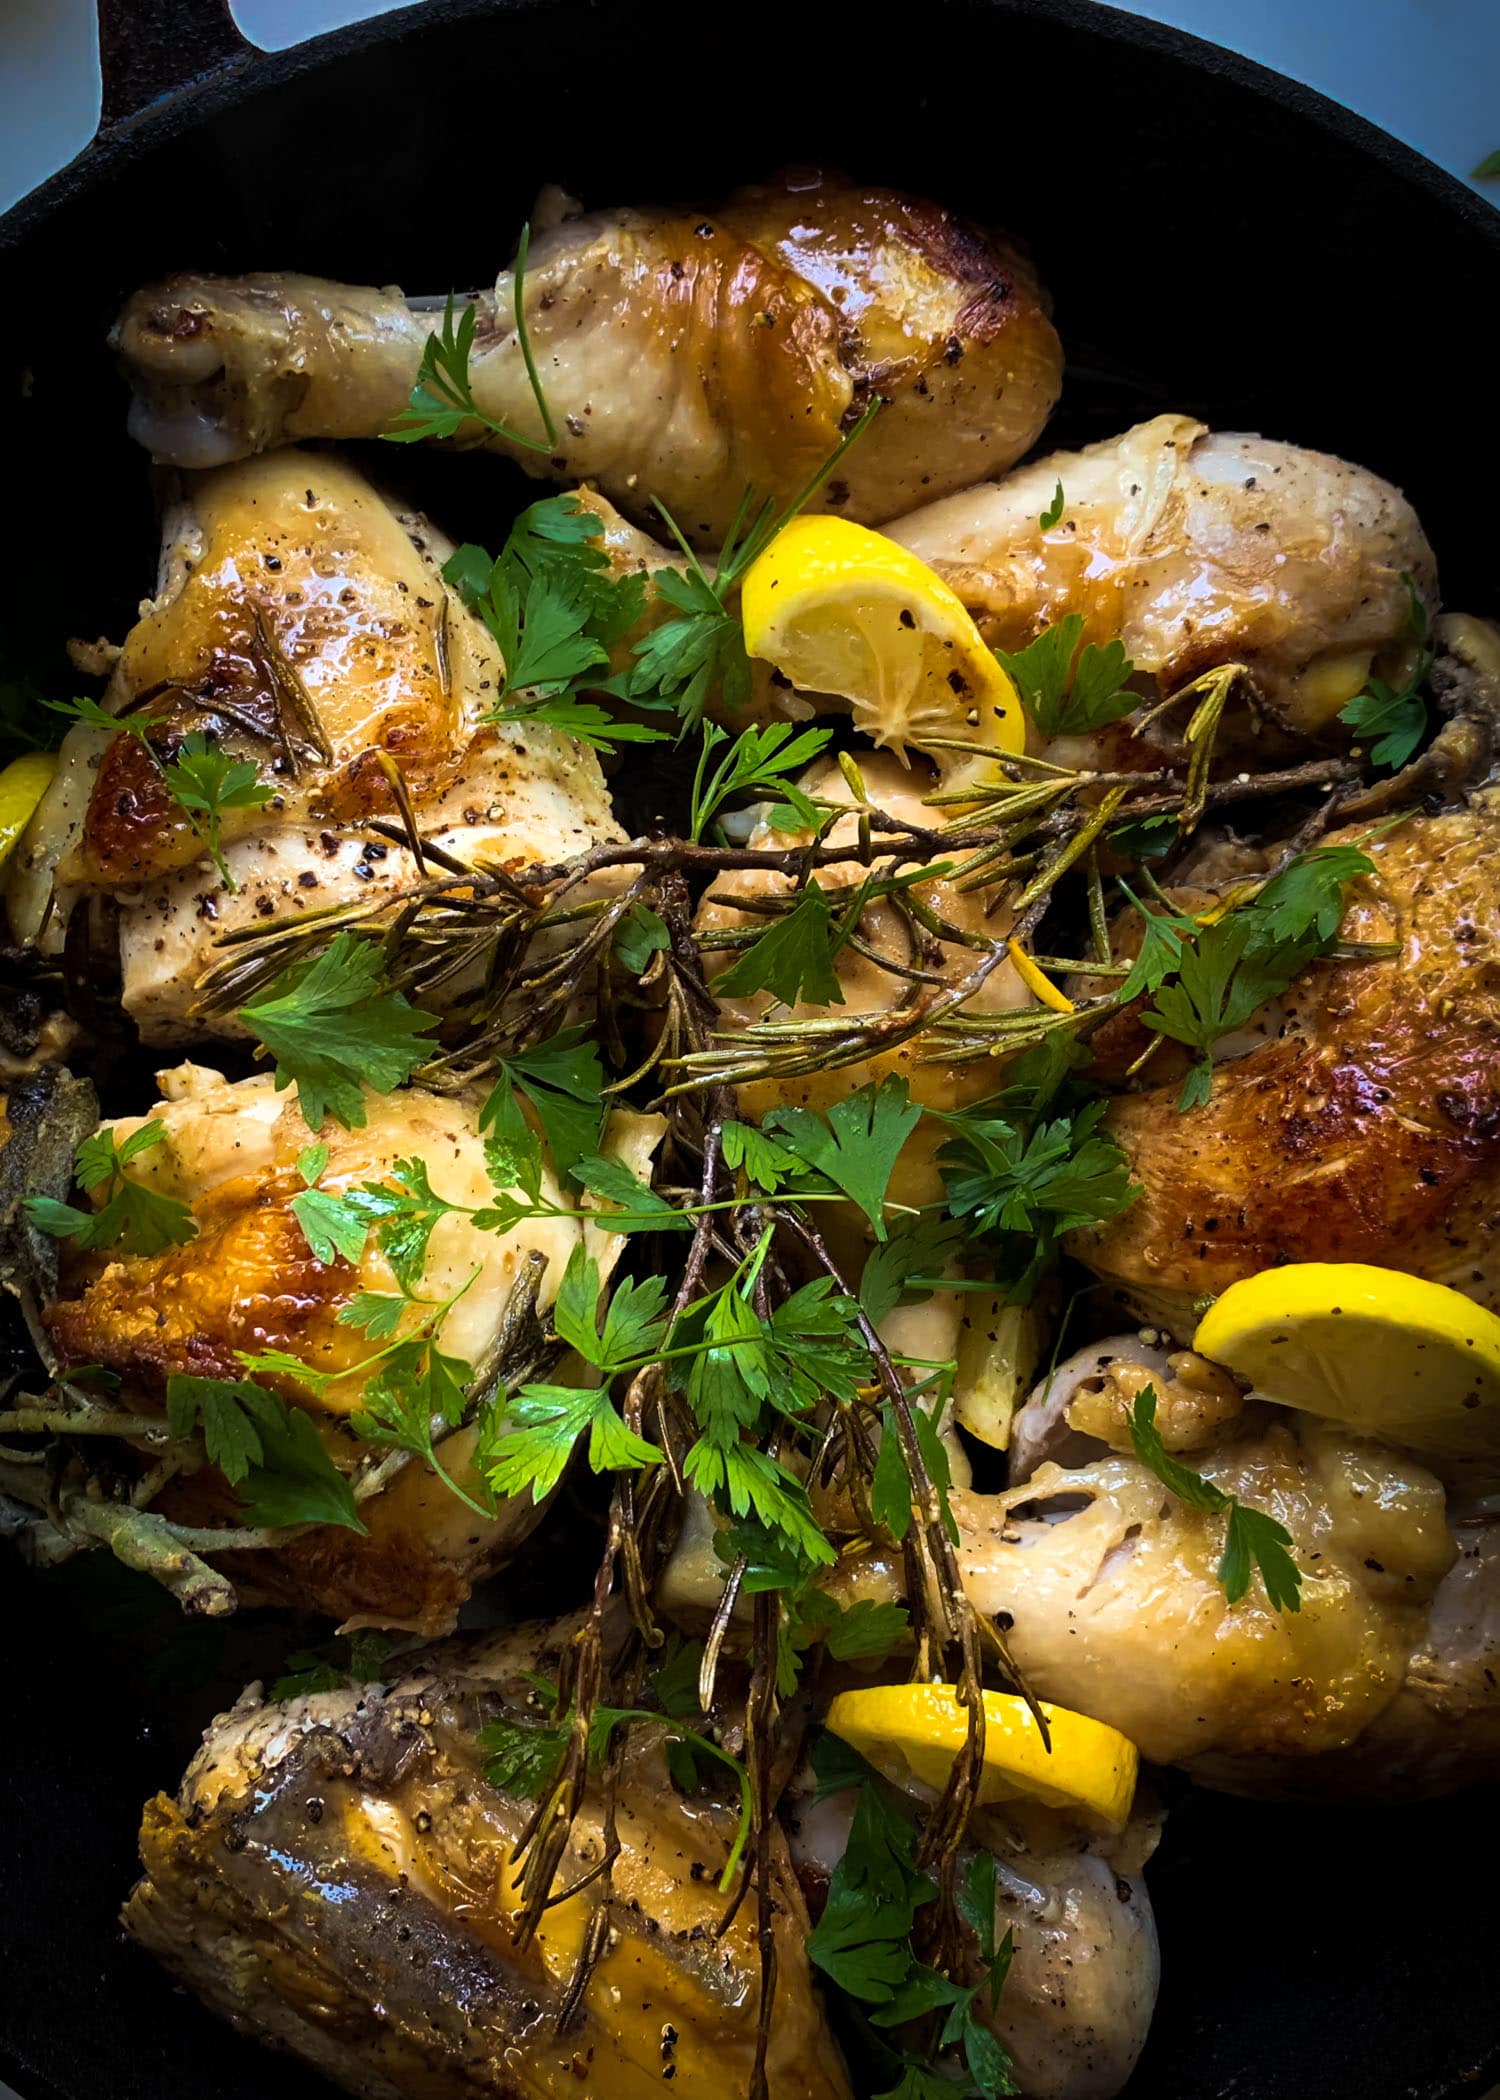 Skillet Roasted Mediterranean Chicken